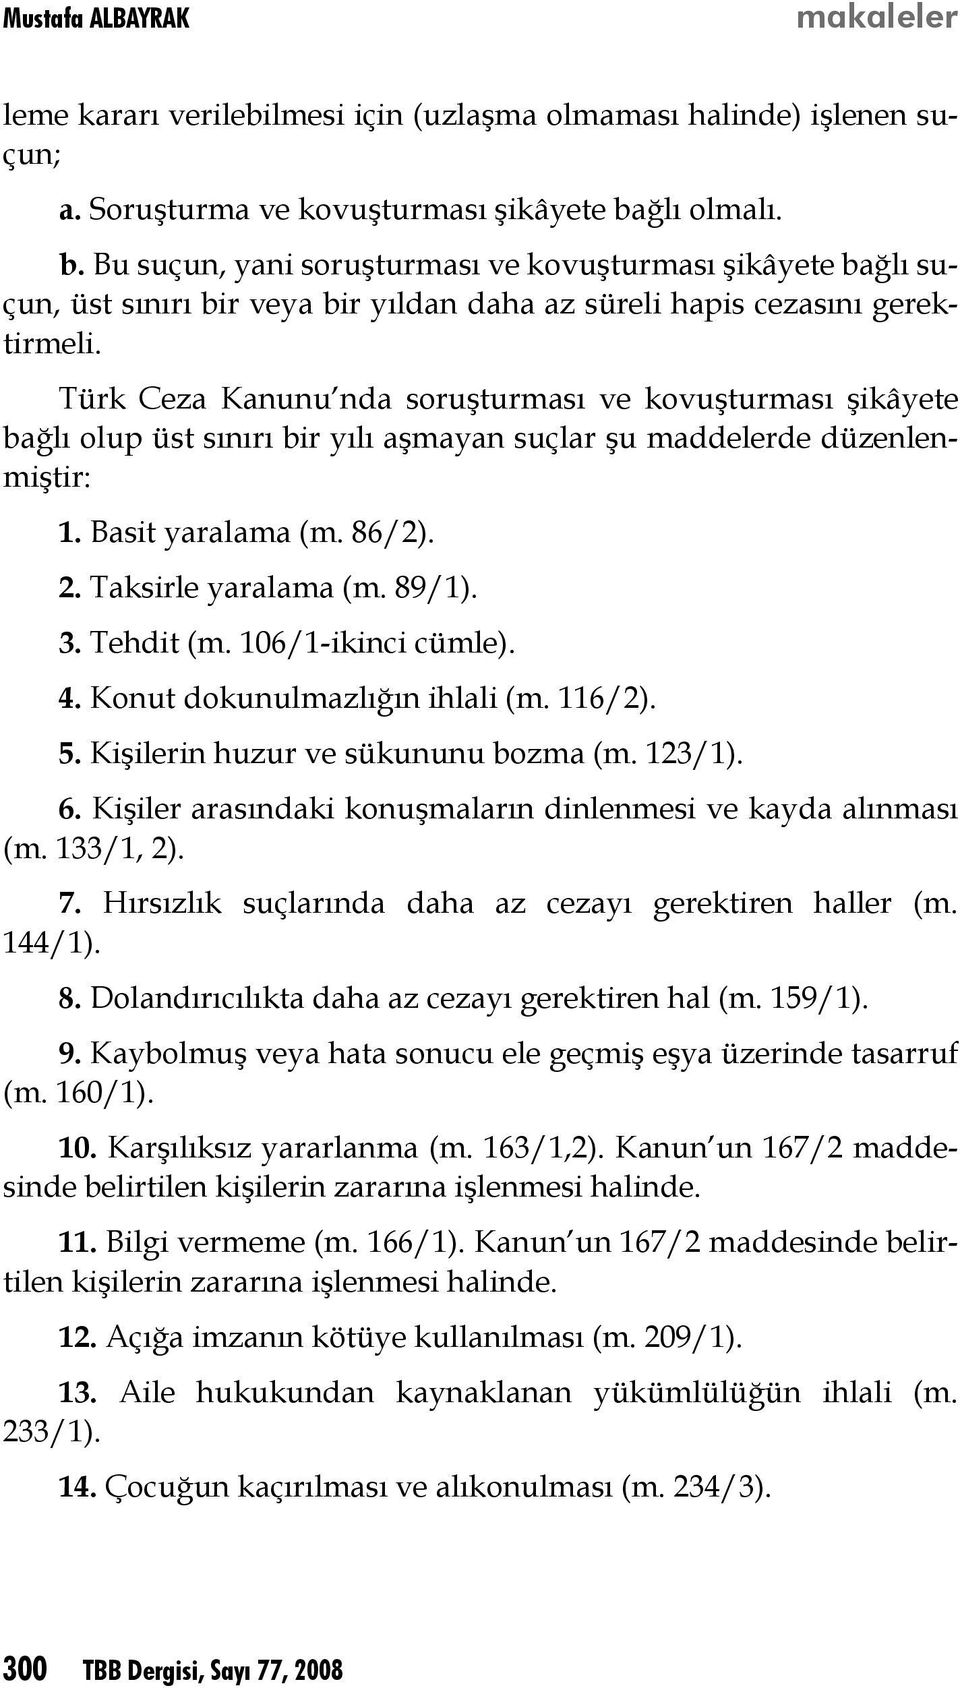 Türk Ceza Kanunu nda soruşturması ve kovuşturması şikâyete bağlı olup üst sınırı bir yılı aşmayan suçlar şu maddelerde düzenlenmiştir: 1. Basit yaralama (m. 86/2). 2. Taksirle yaralama (m. 89/1). 3.